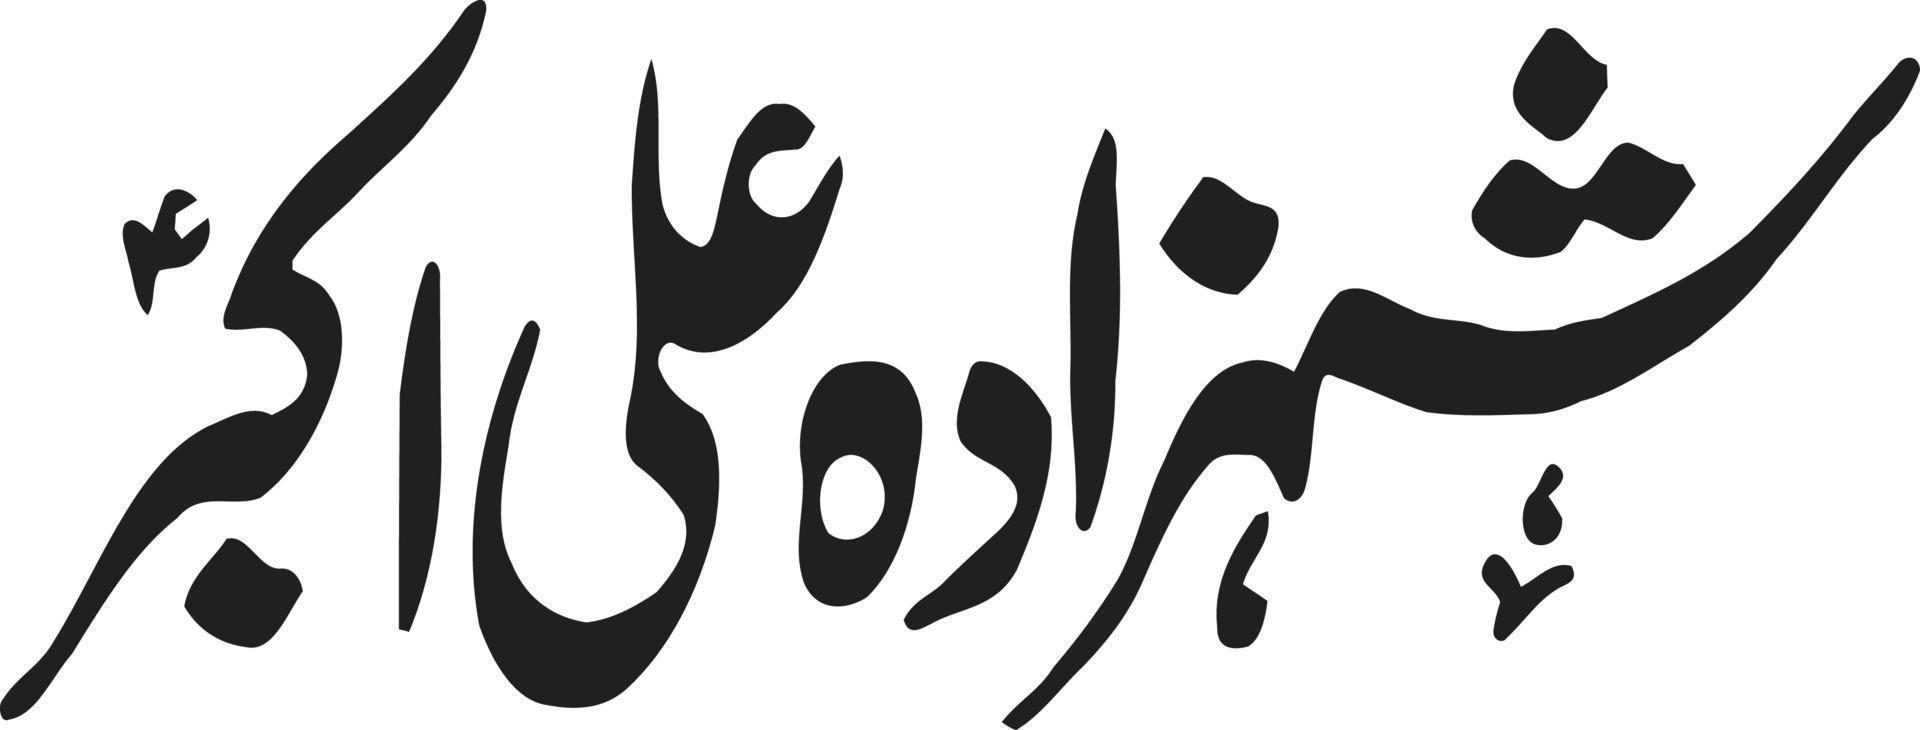 shazada ali akber titre islamique ourdou calligraphie arabe vecteur gratuit